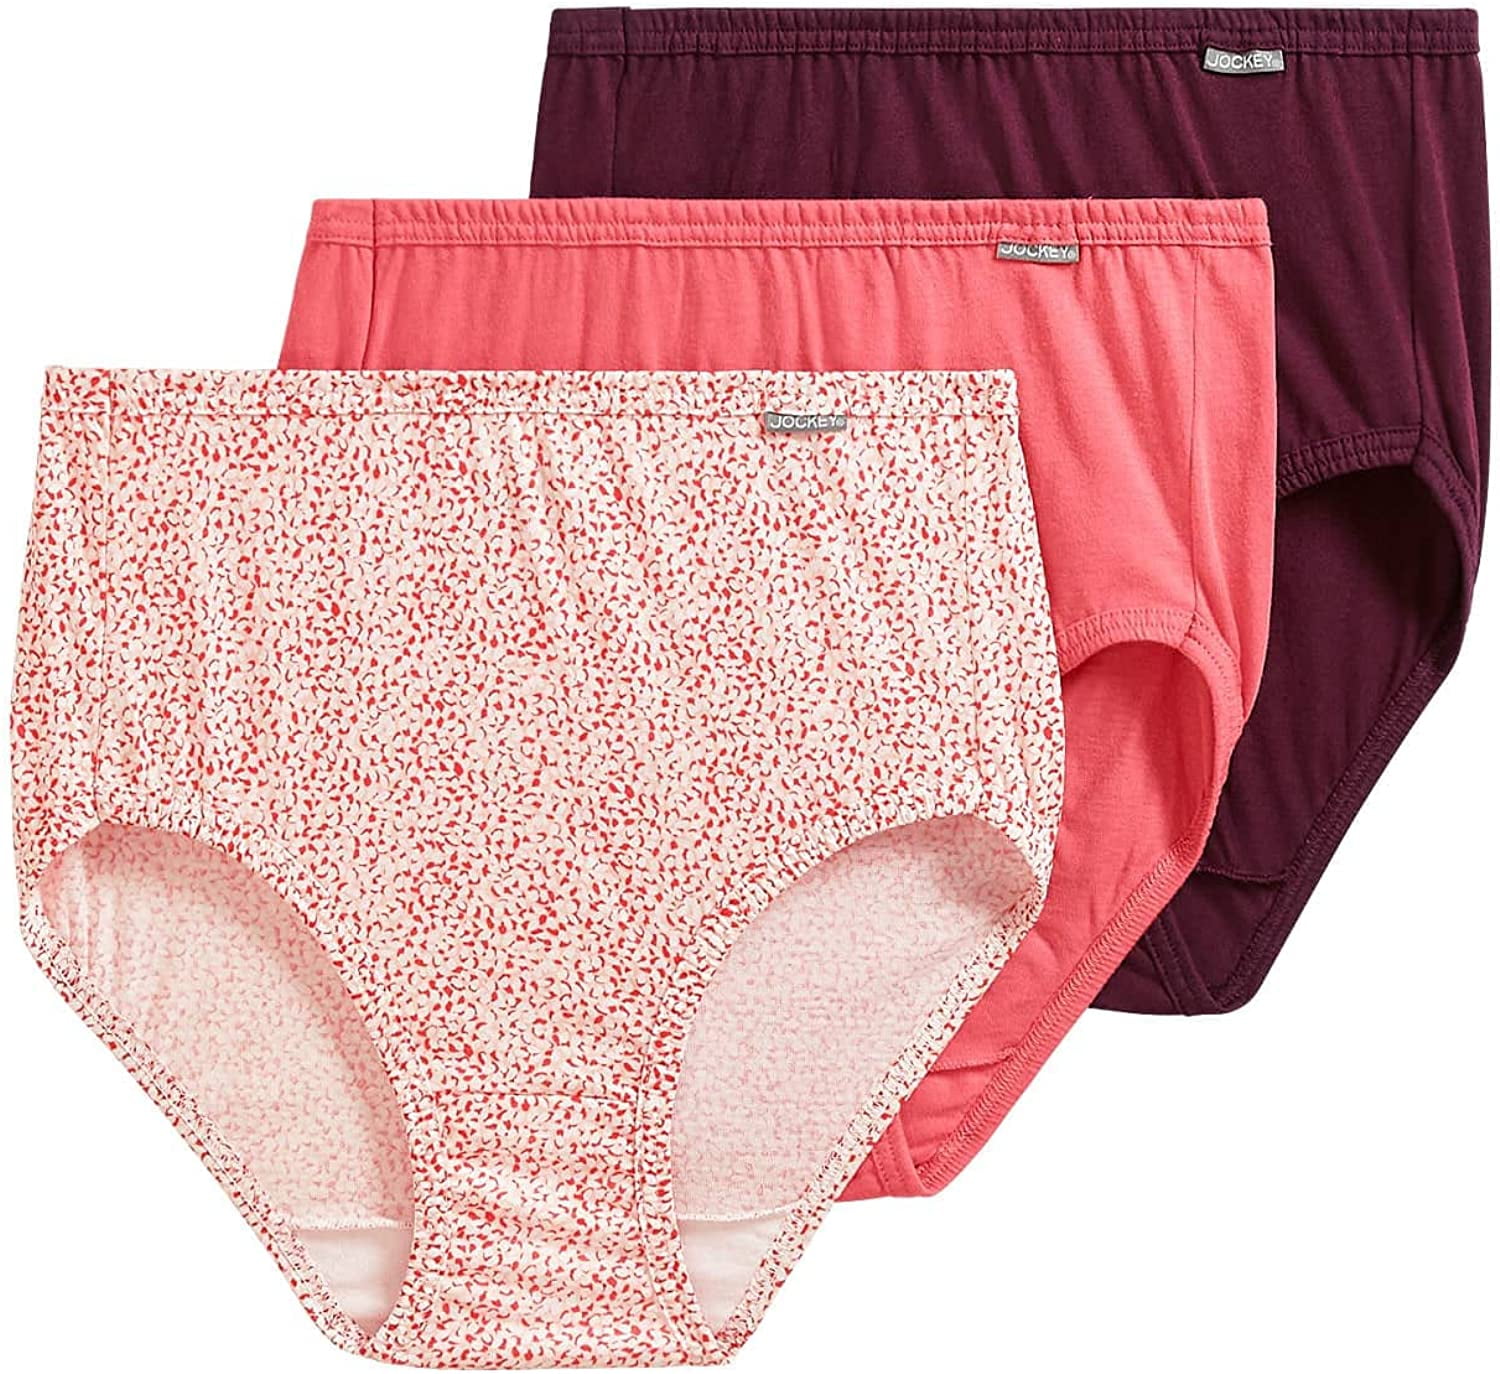 Jockey Women's Underwear Elance Brief - 3 Pack 